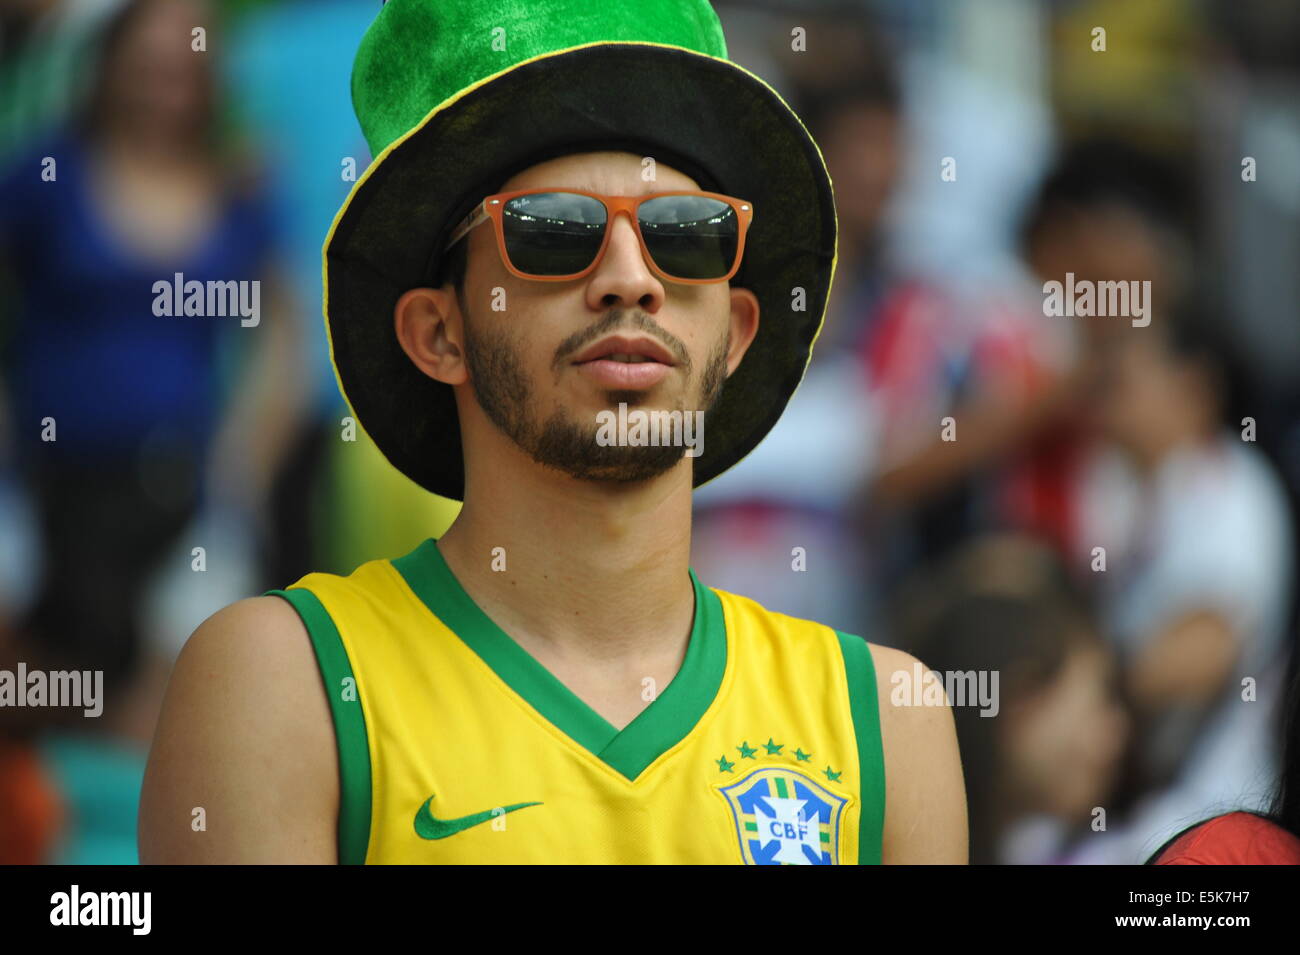 WM 2014, Brasilianischer Fan im Stadion, Salvador da Bahia, Brasilien. Stock Photo